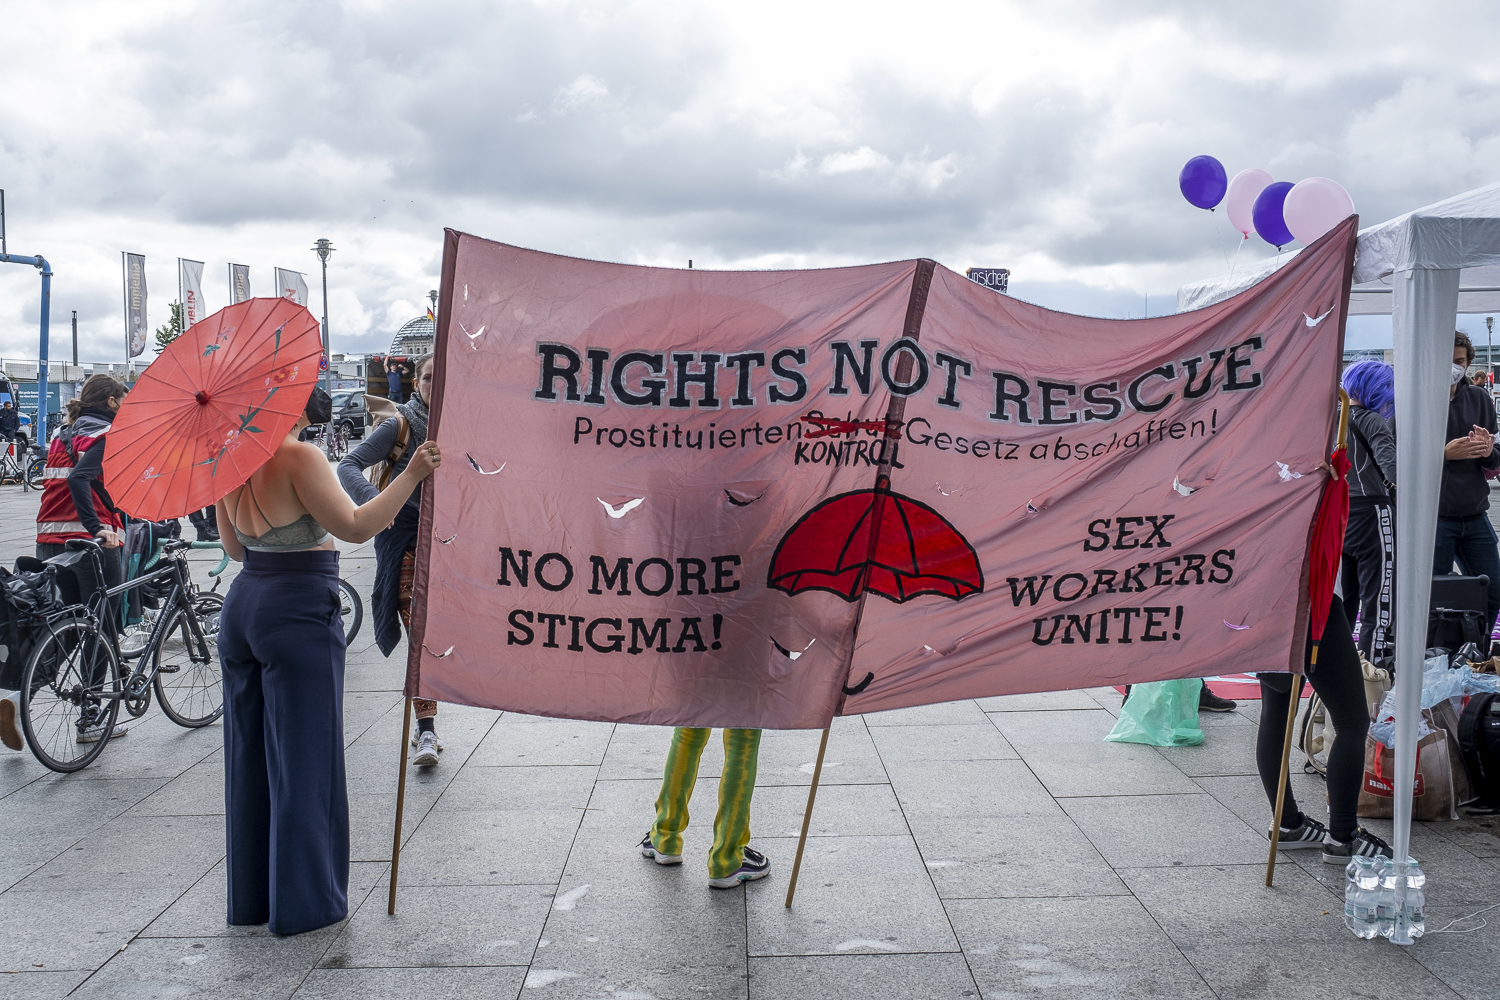 Großes Transpi auf einer Demo, Text u.a. Rights not rescue. No more Stigma. Sex workers unite. In der Mitte ein roter Regenschirm.